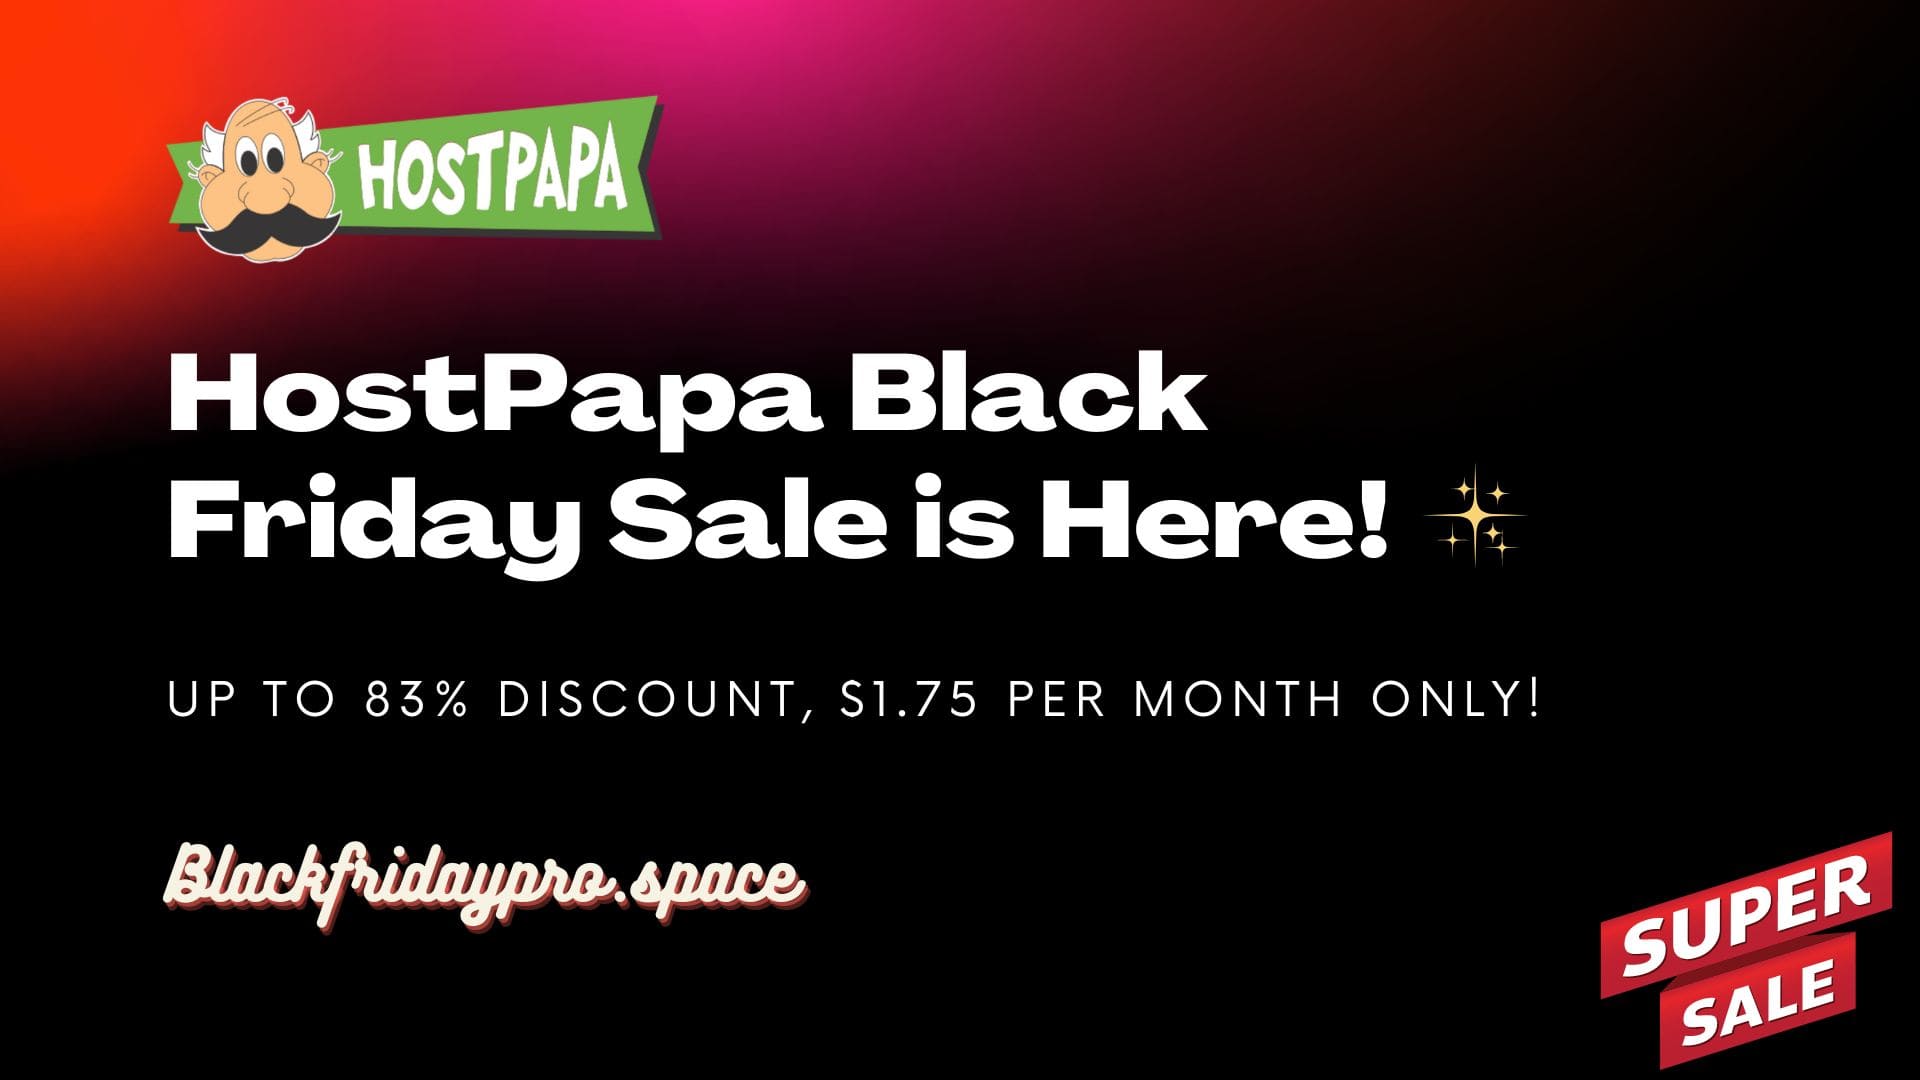 HostPapa Black Friday Sale is Here!